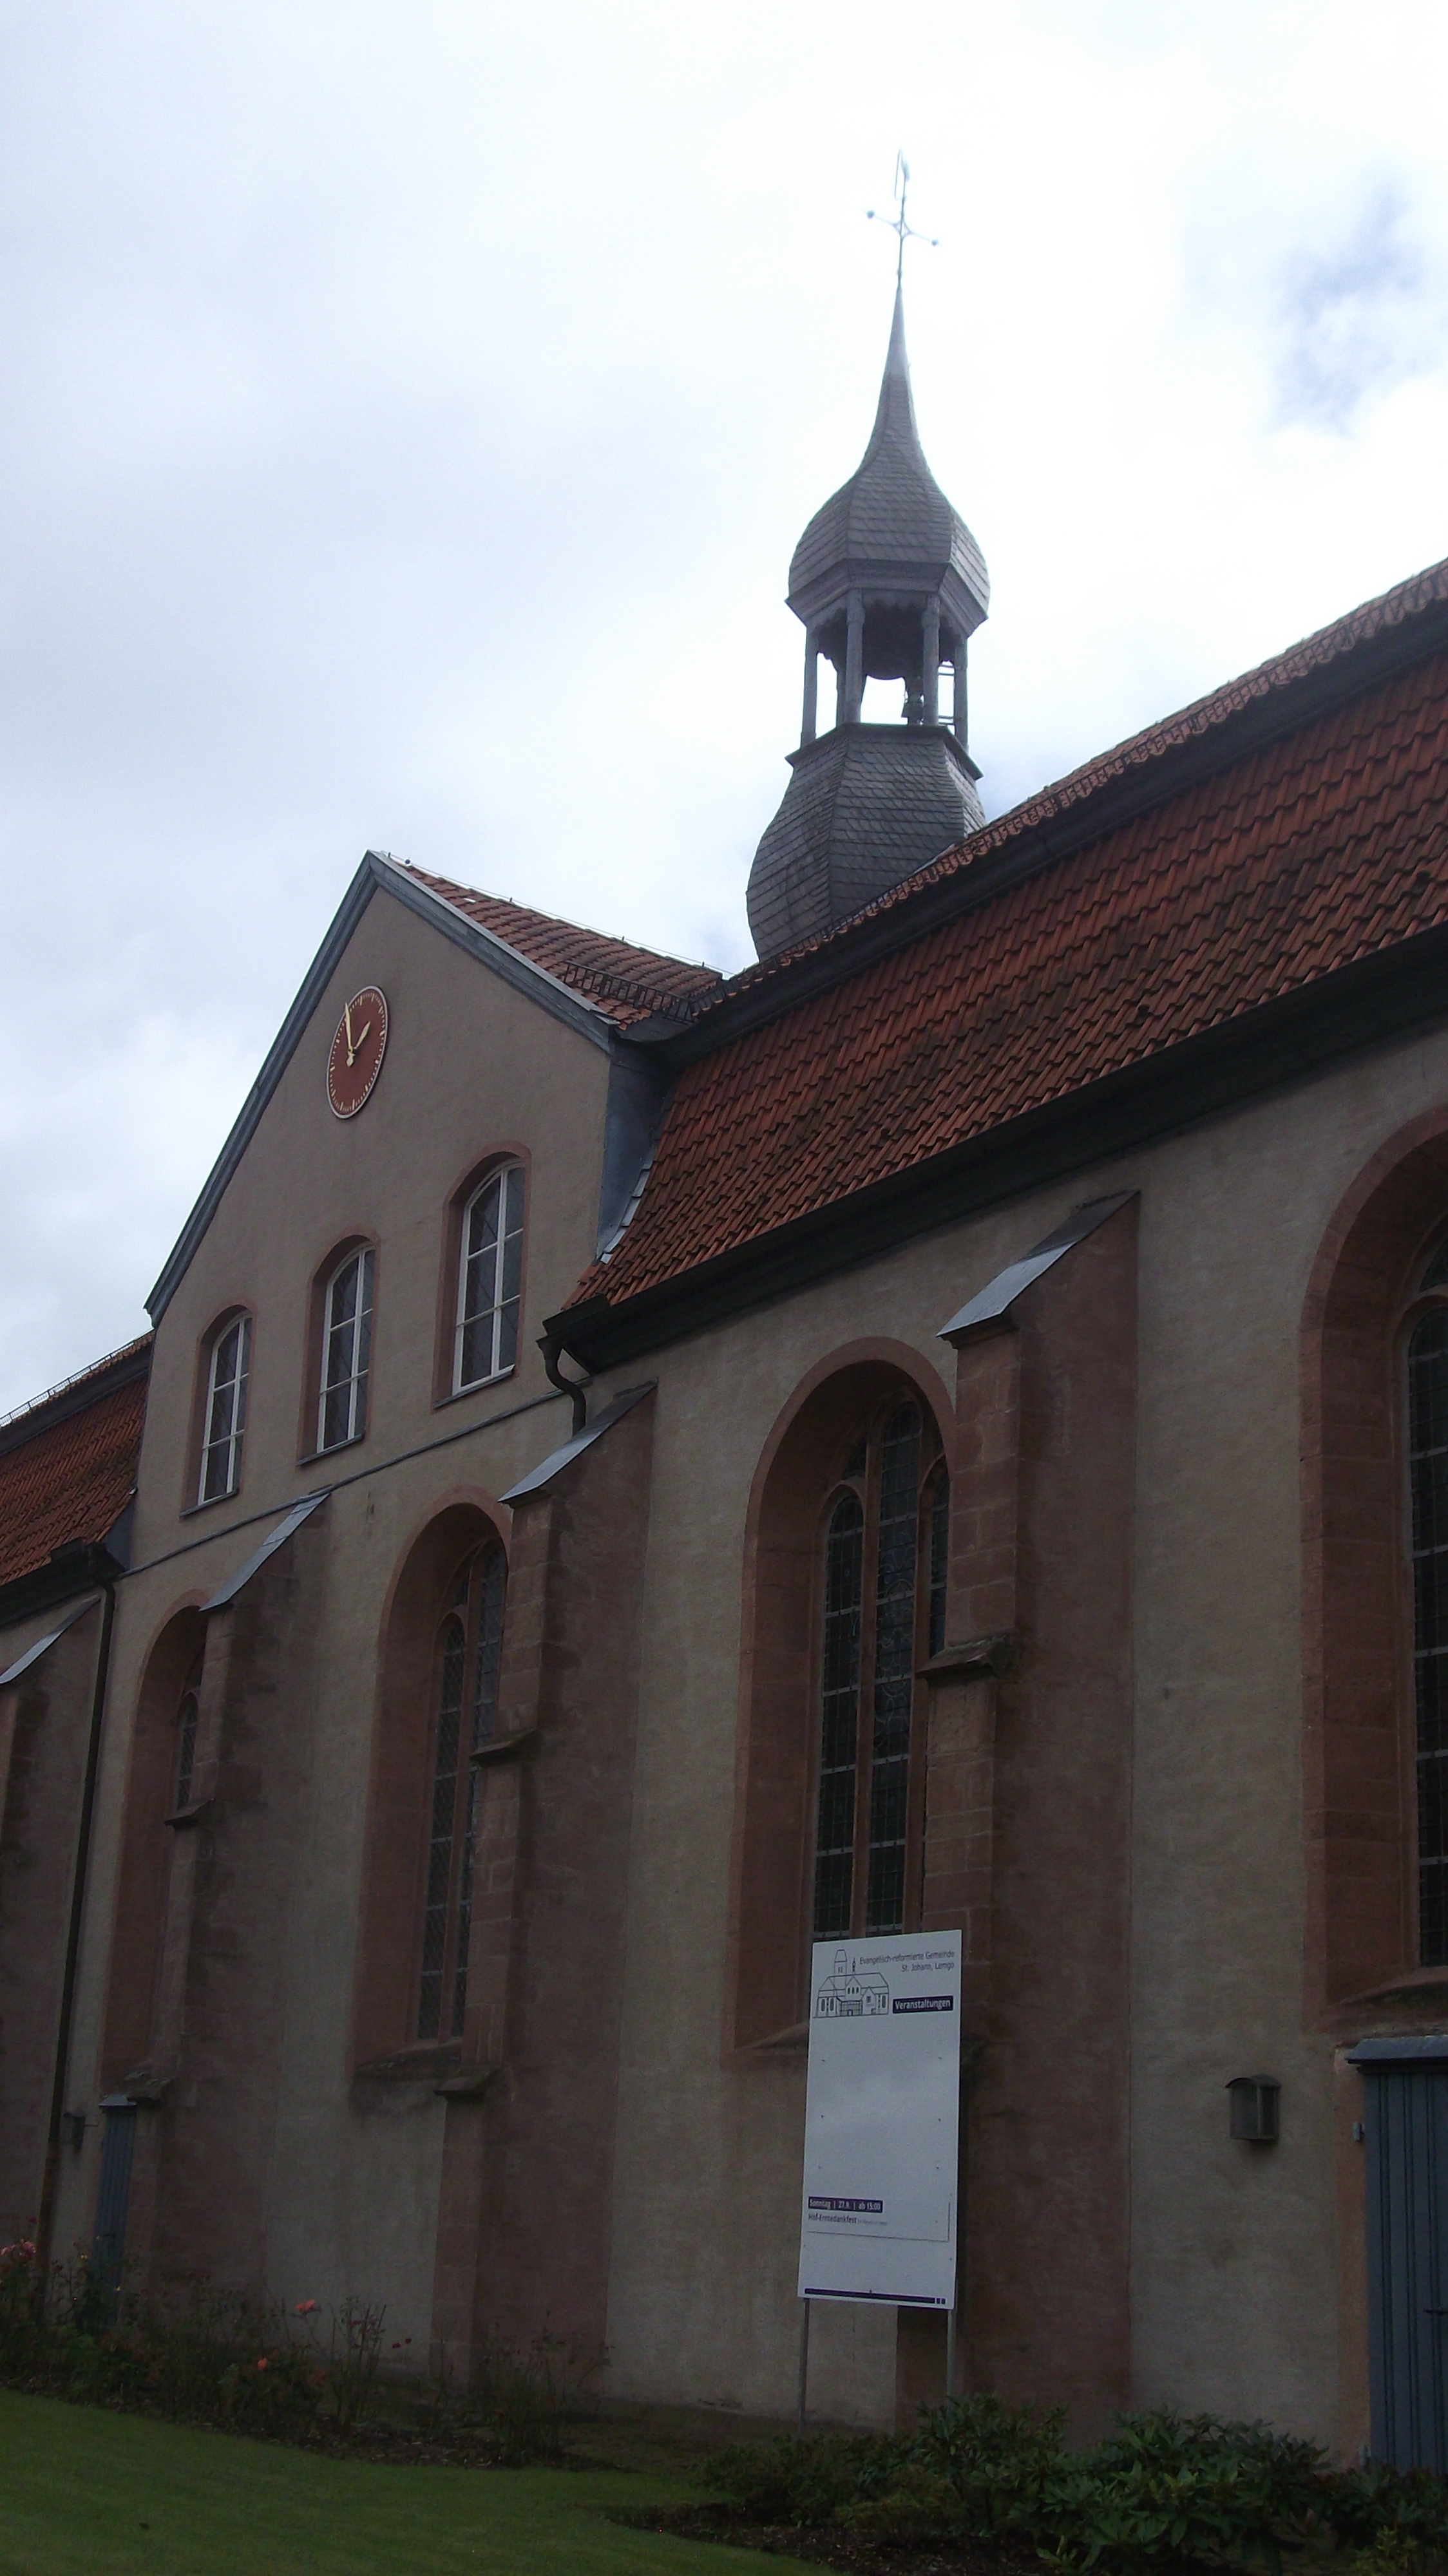 Bild 1 Kirche St. Johann - Evangelisch-reformierte Kirchengemeinde St. Johann, Lemgo in Lemgo